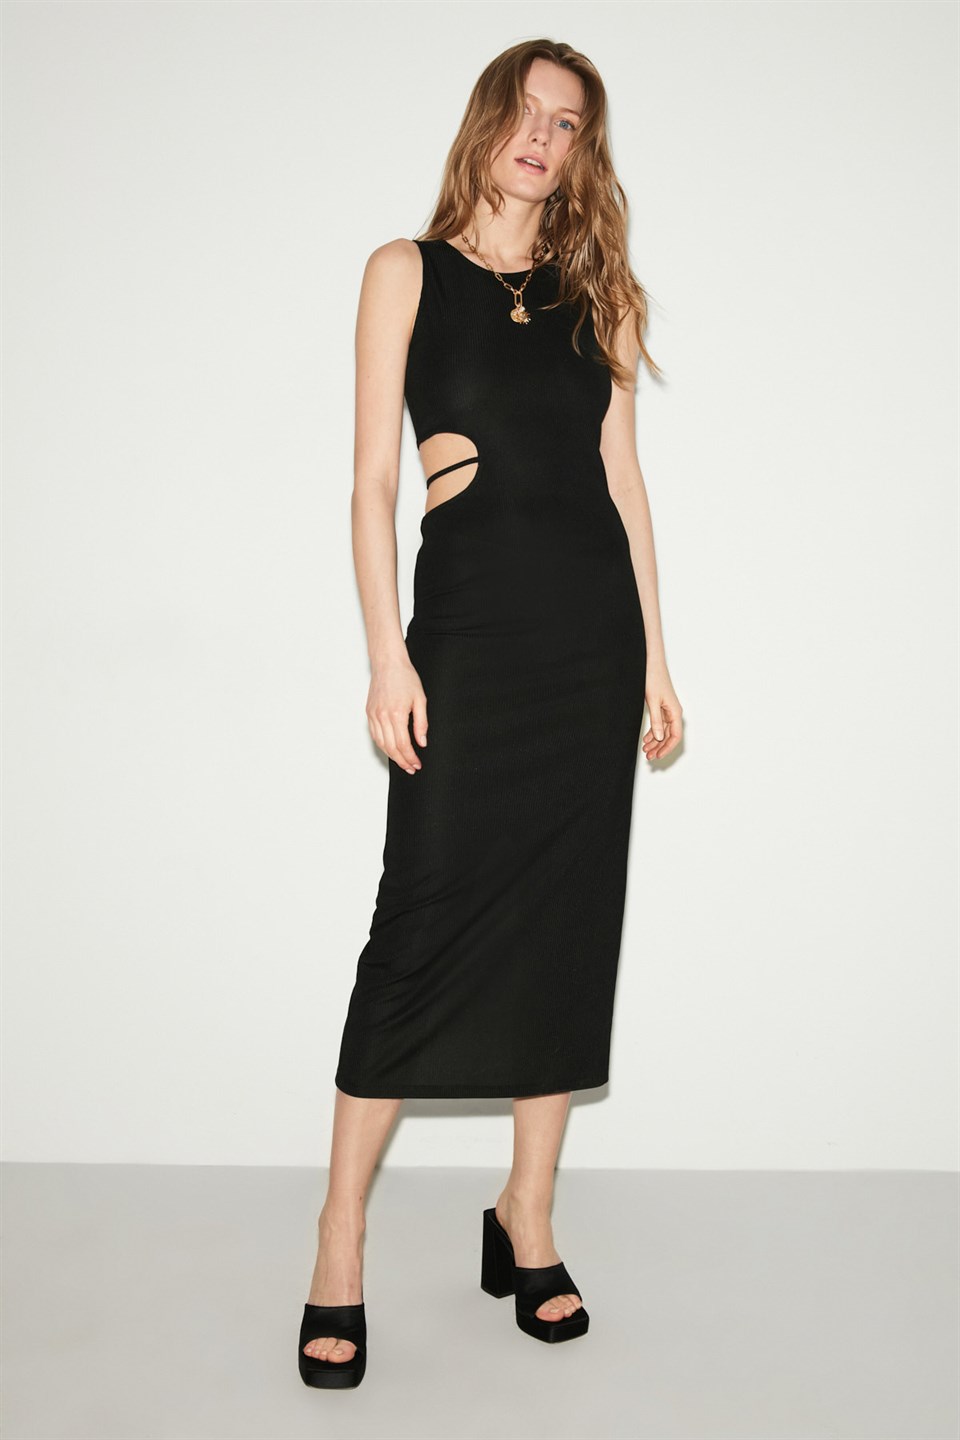 HAZEL Kadın Siyah Düz Renk Yuvarlak Yaka Midi Elbise